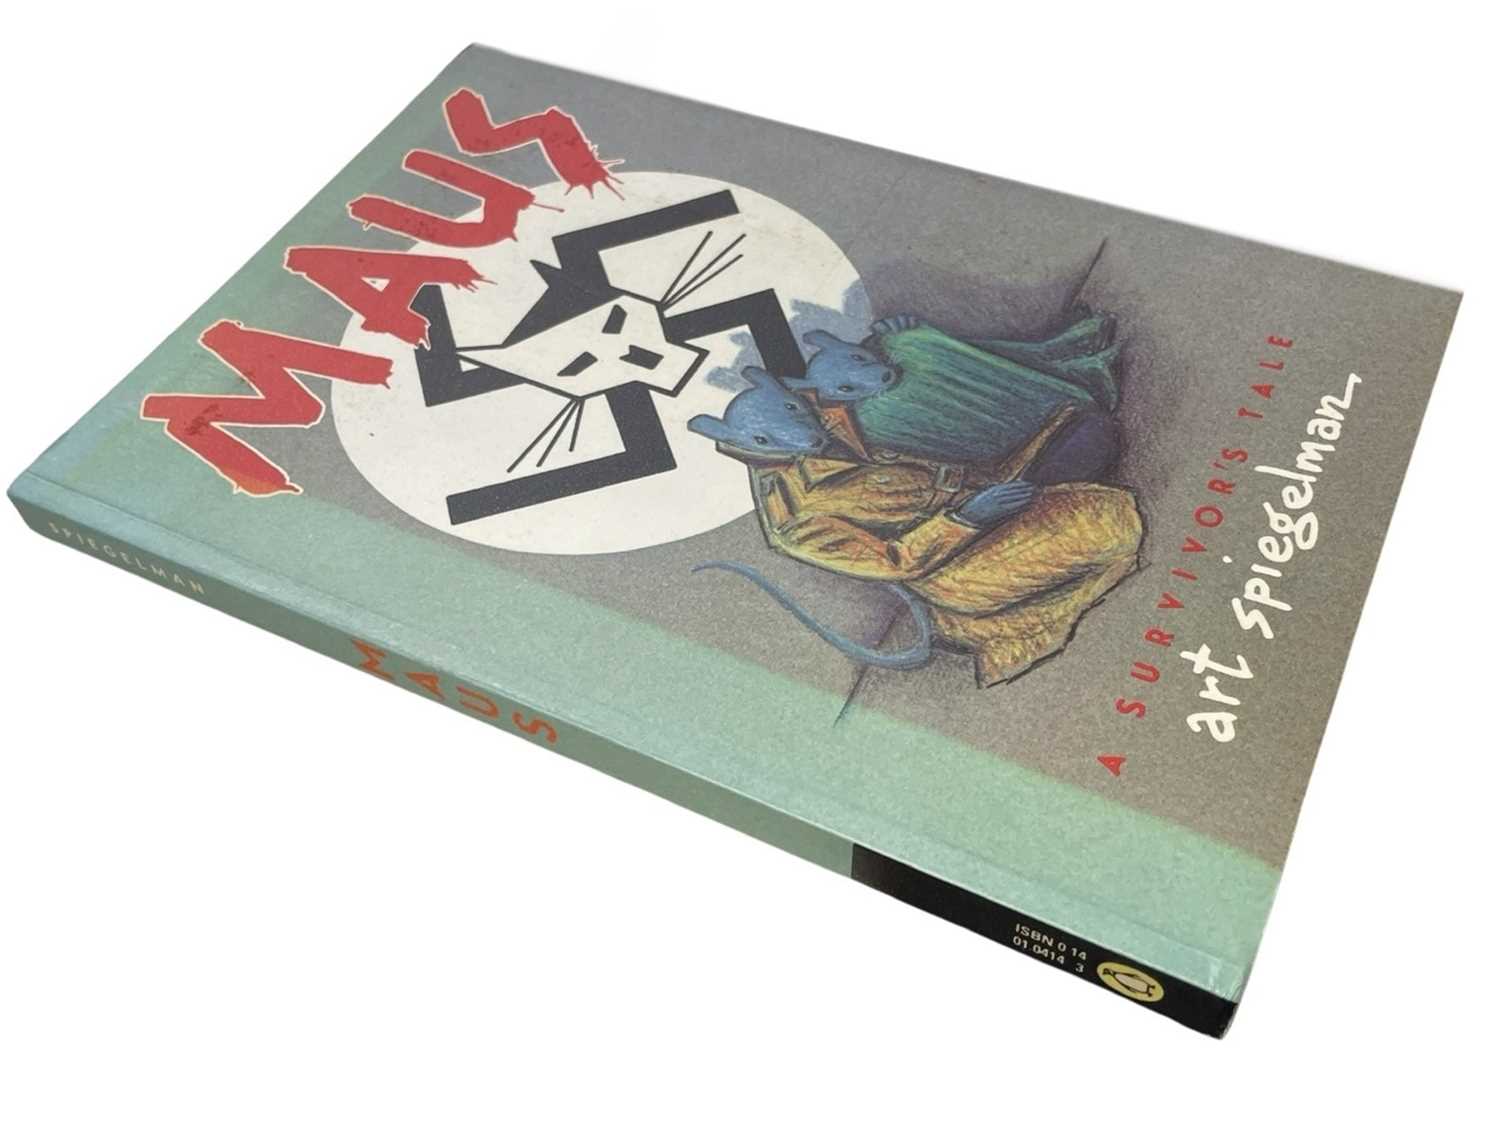 ART SPIEGELMAN: MAUS - A SURVIVOR'S TALE, Beccles, William Clowes, 1987